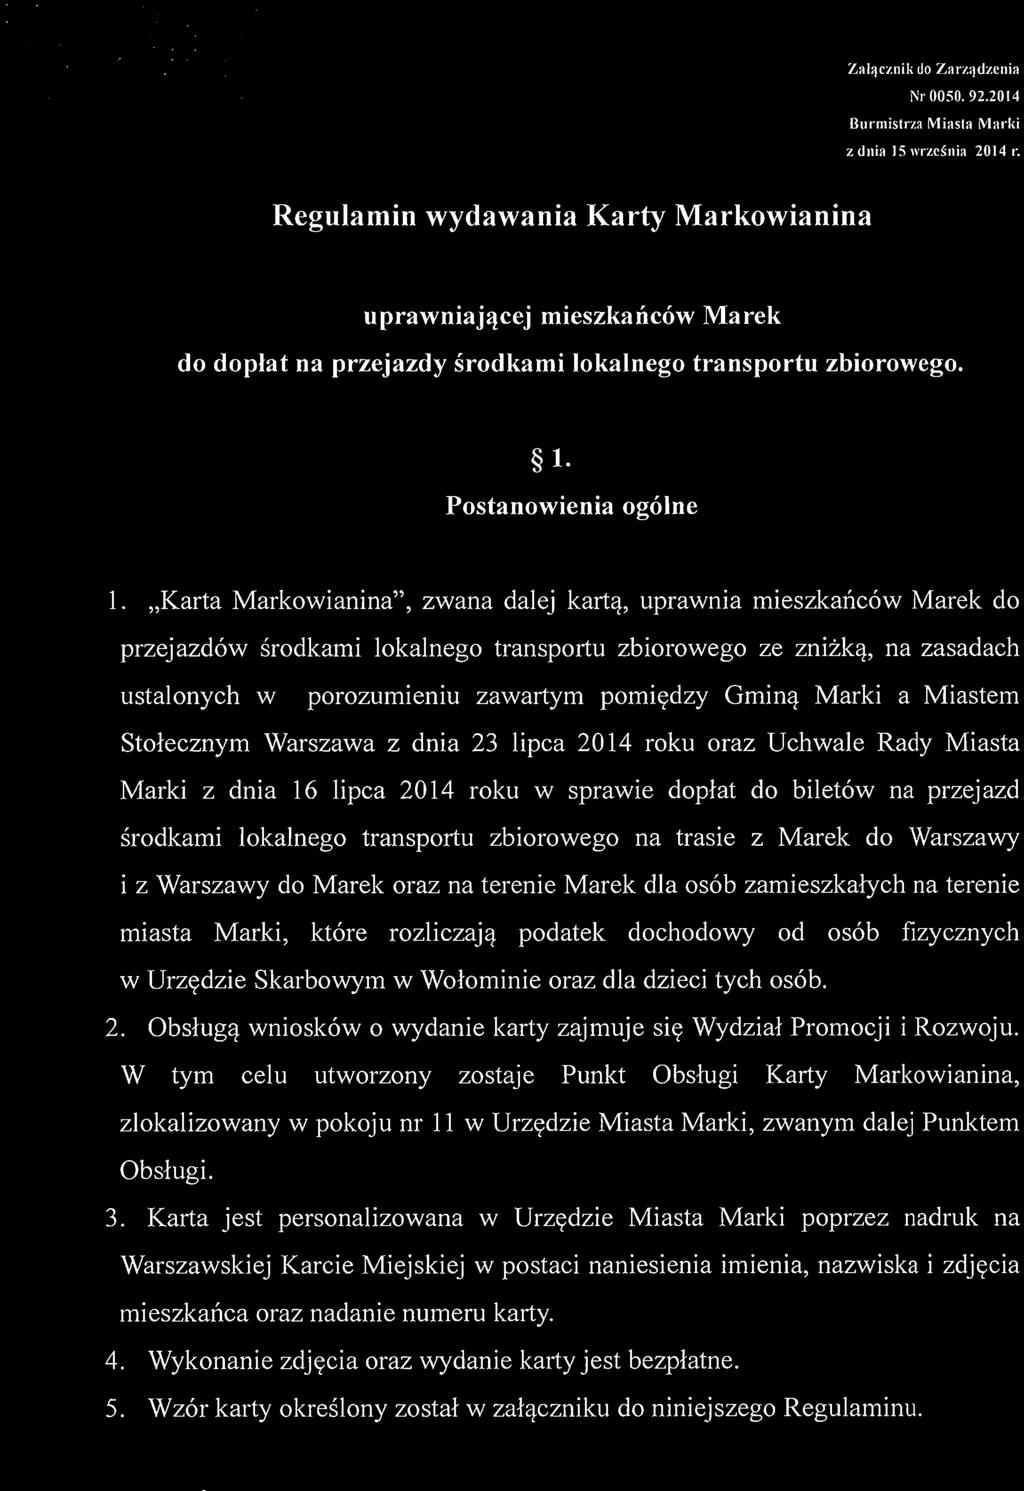 "Karta Markowianina", zwana dalej karta, uprawnia mieszkancow Marek do przejazdow srodkami lokalnego transportu zbiorowego ze znizka, na zasadach ustalonych w porozumieniu zawartym porniedzy Gmina